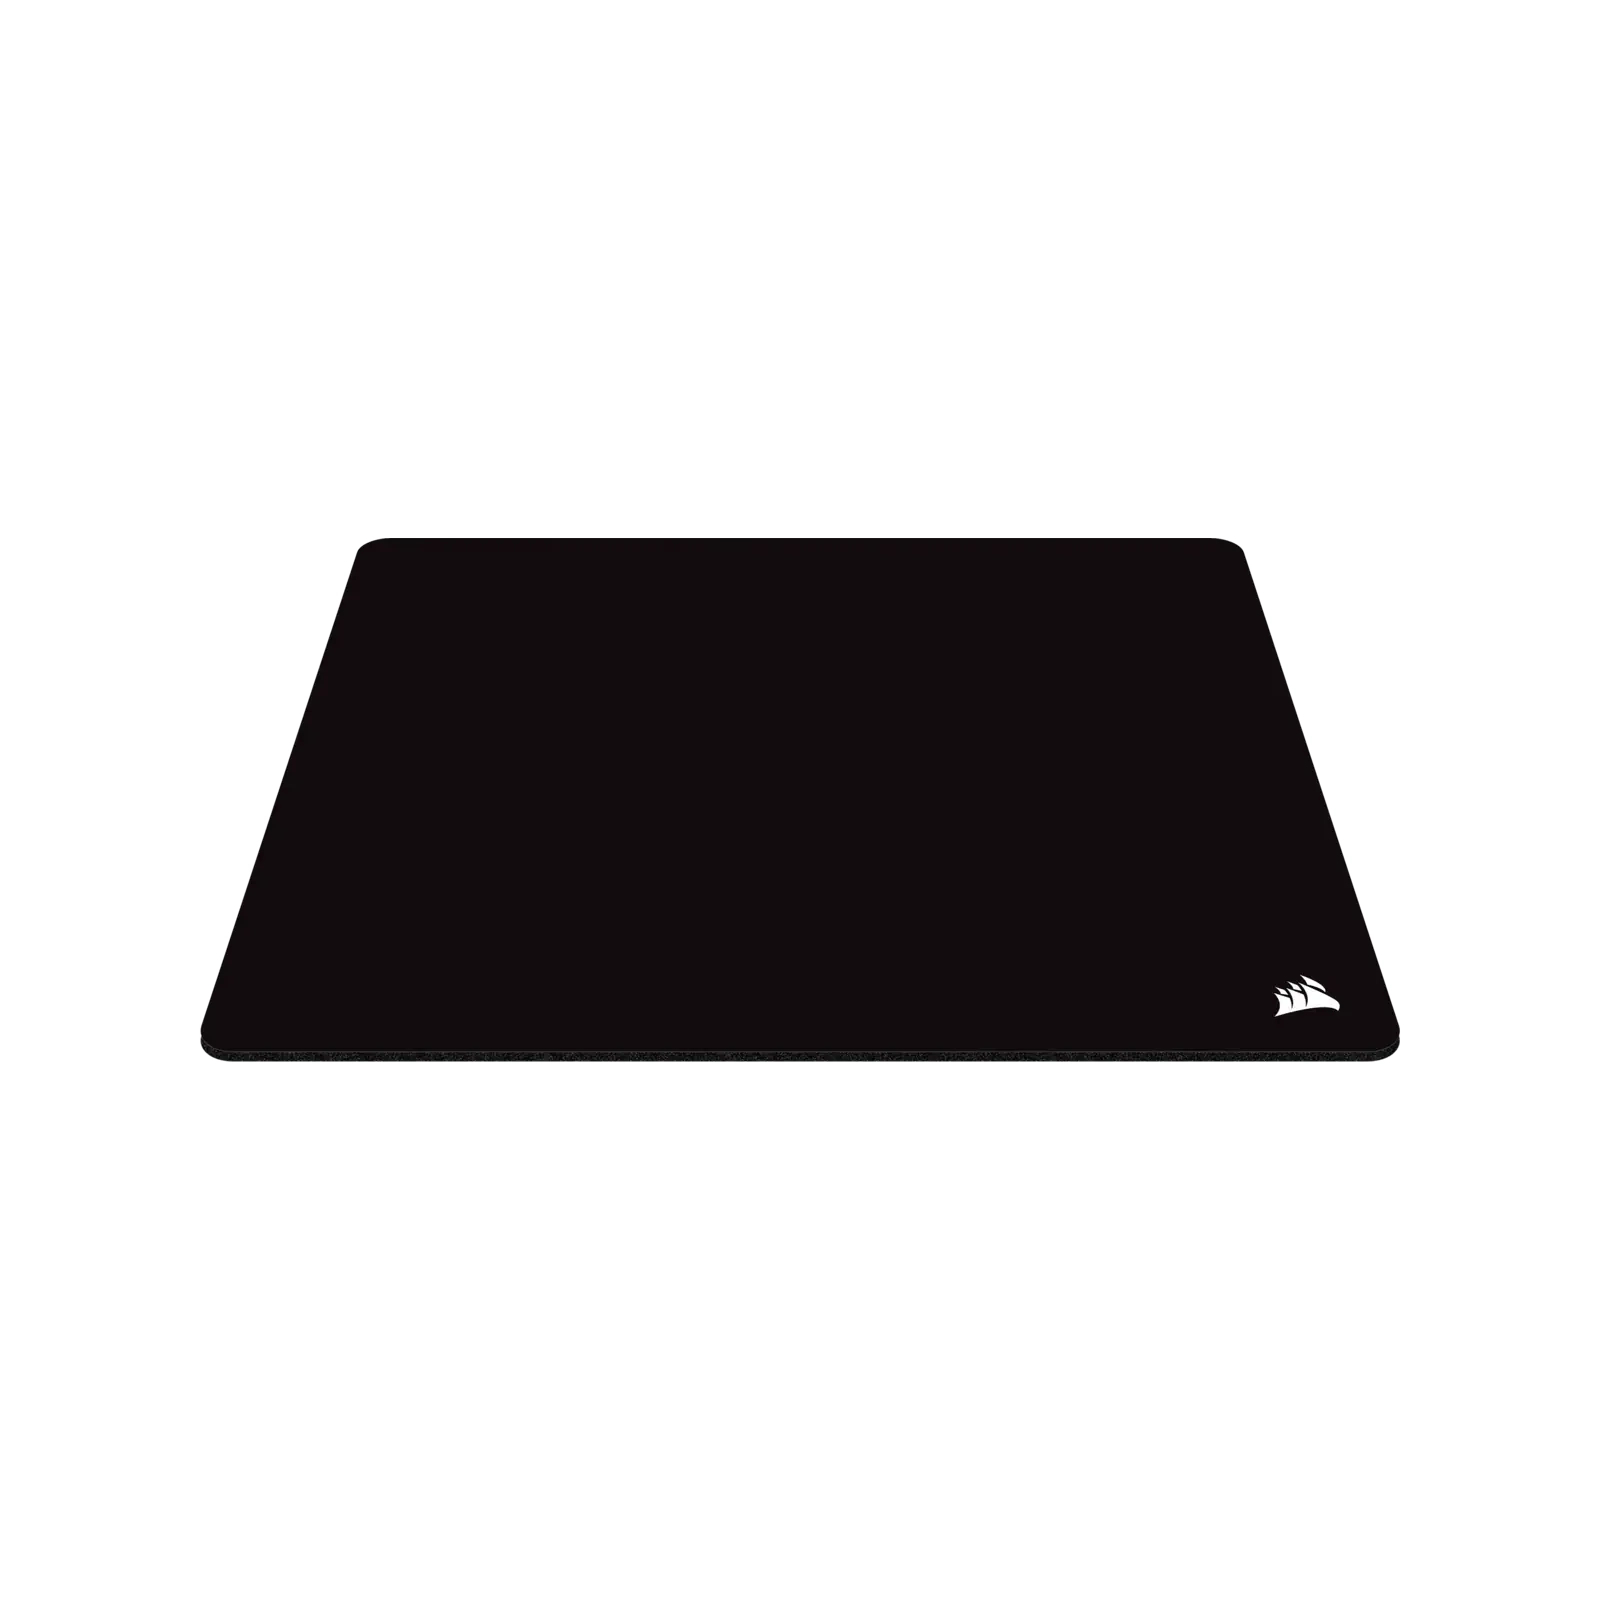 Коврик для мышки Corsair MM200 Premium Spill-Proof Cloth Black (CH-9412660-WW) изображение 2